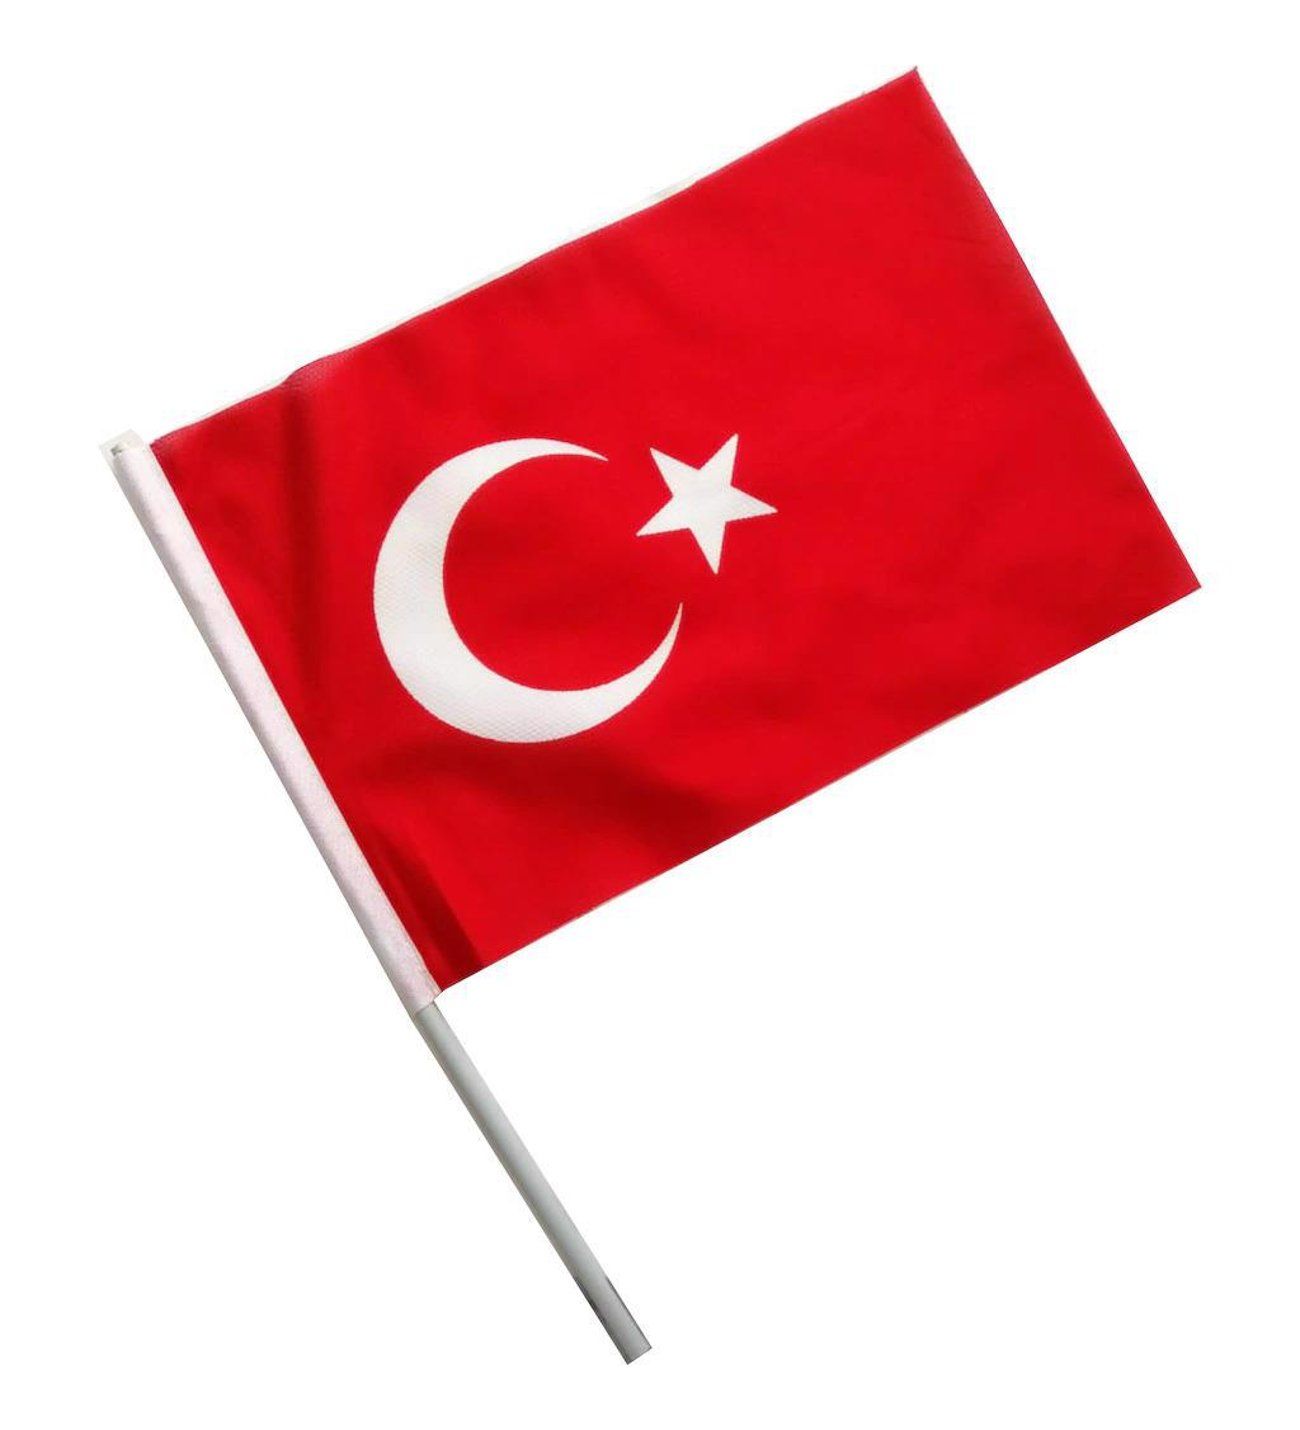 Raşel Kumaş Türk Bayrağı (20 cm x 30 cm)